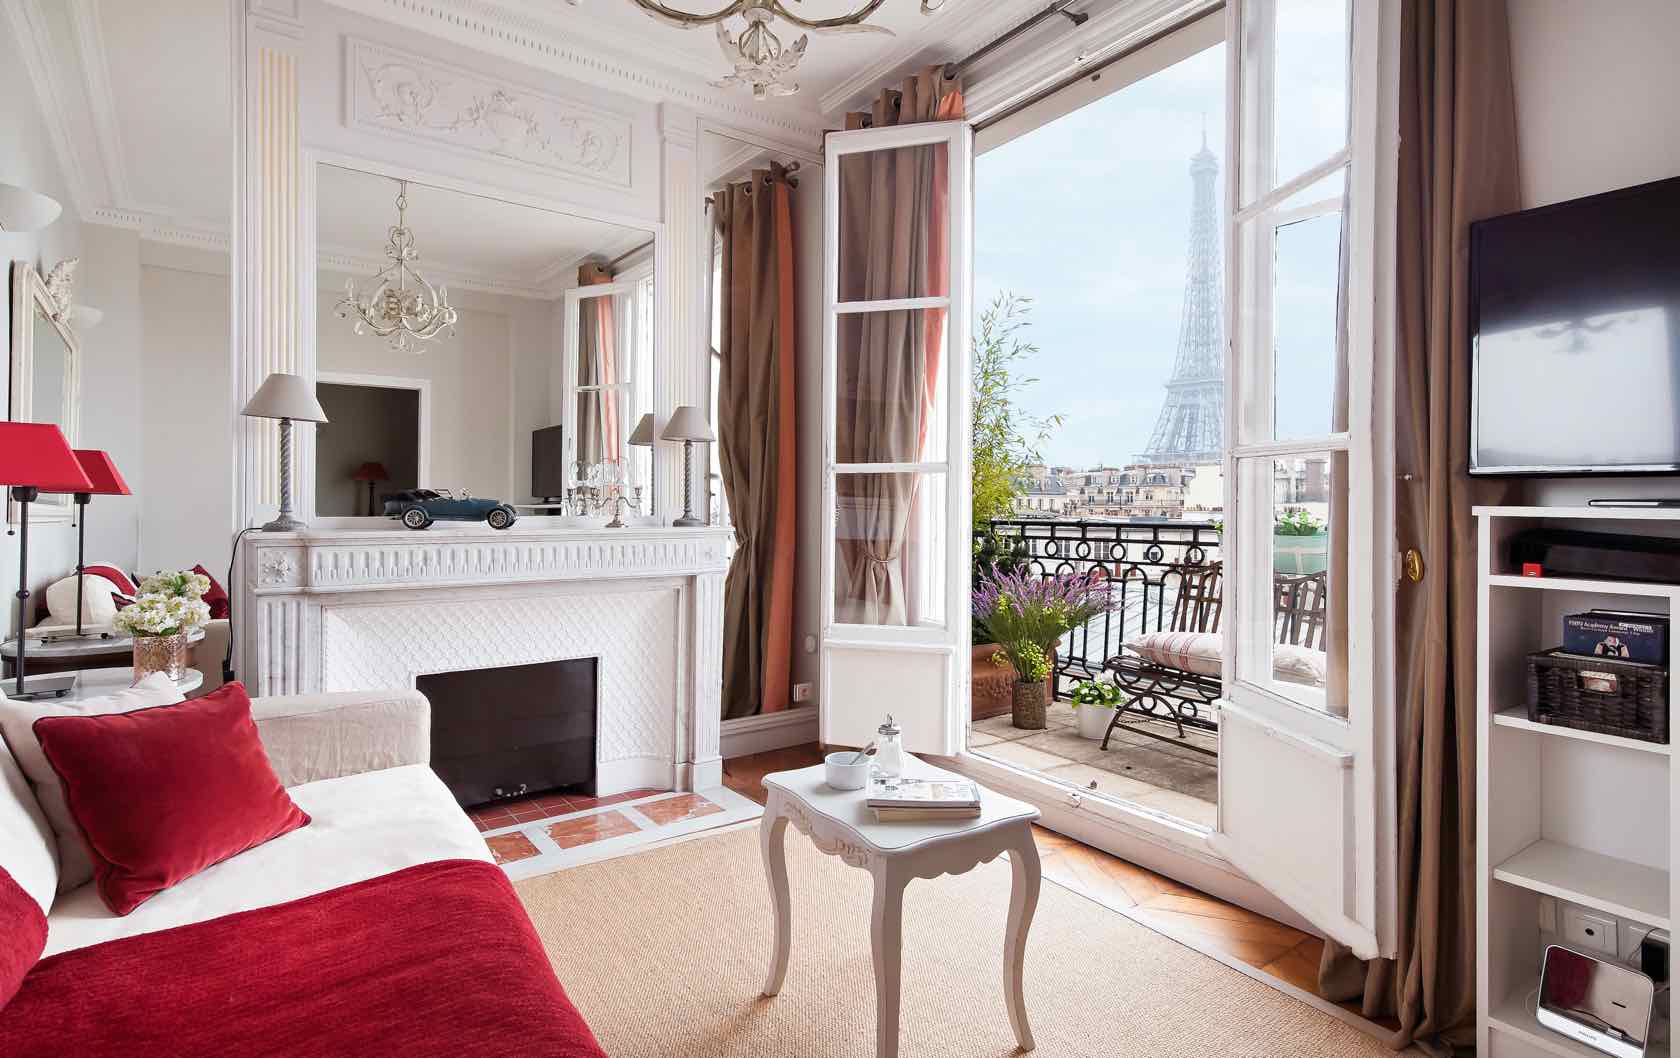 Paris apartment remodel